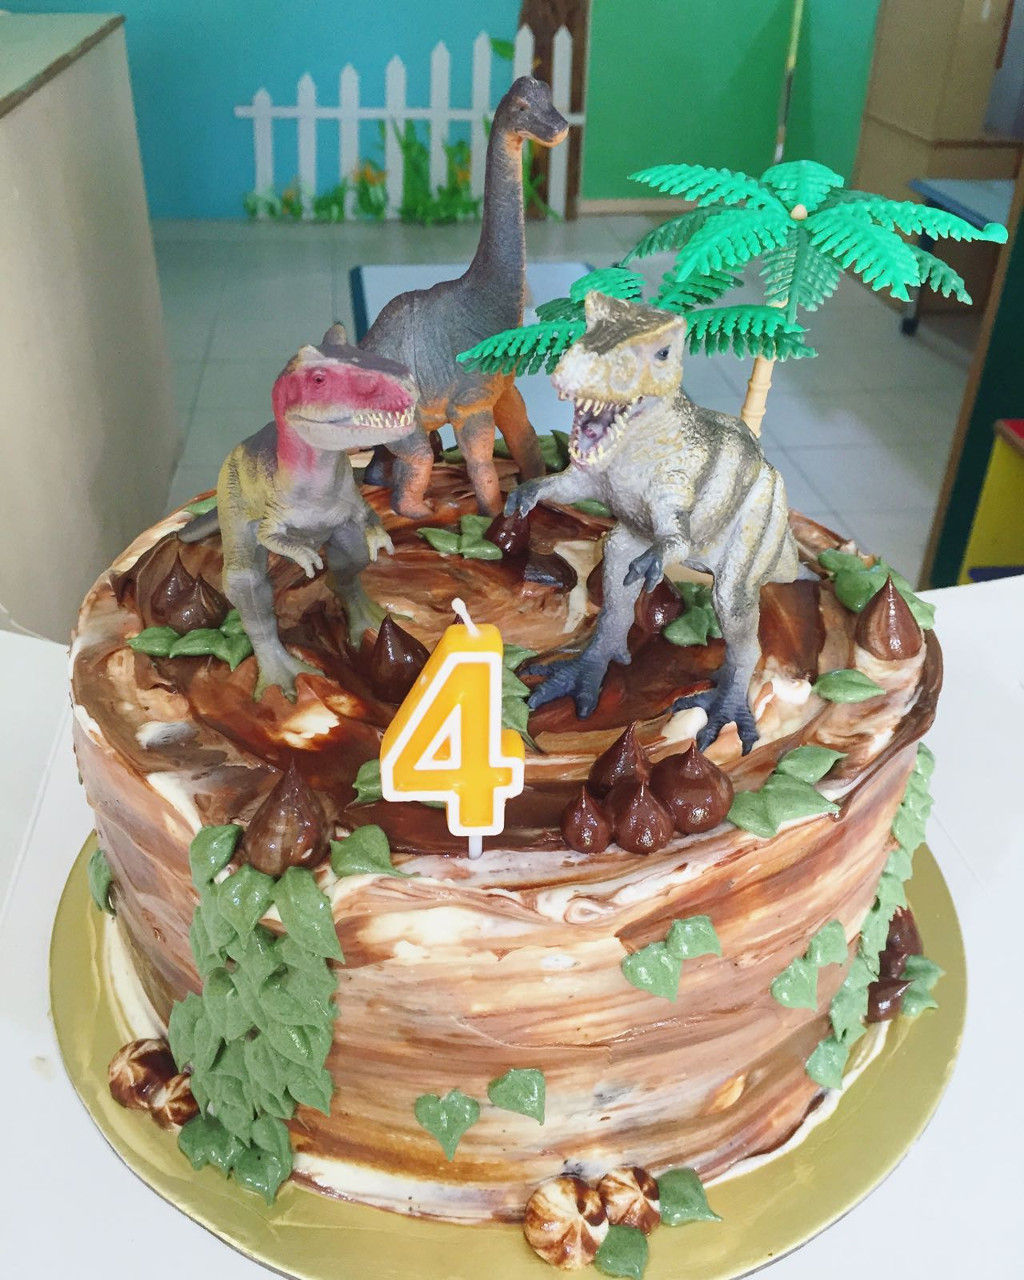 Kid's birthday Cake - Dinosaur cake from Sarah's Loft